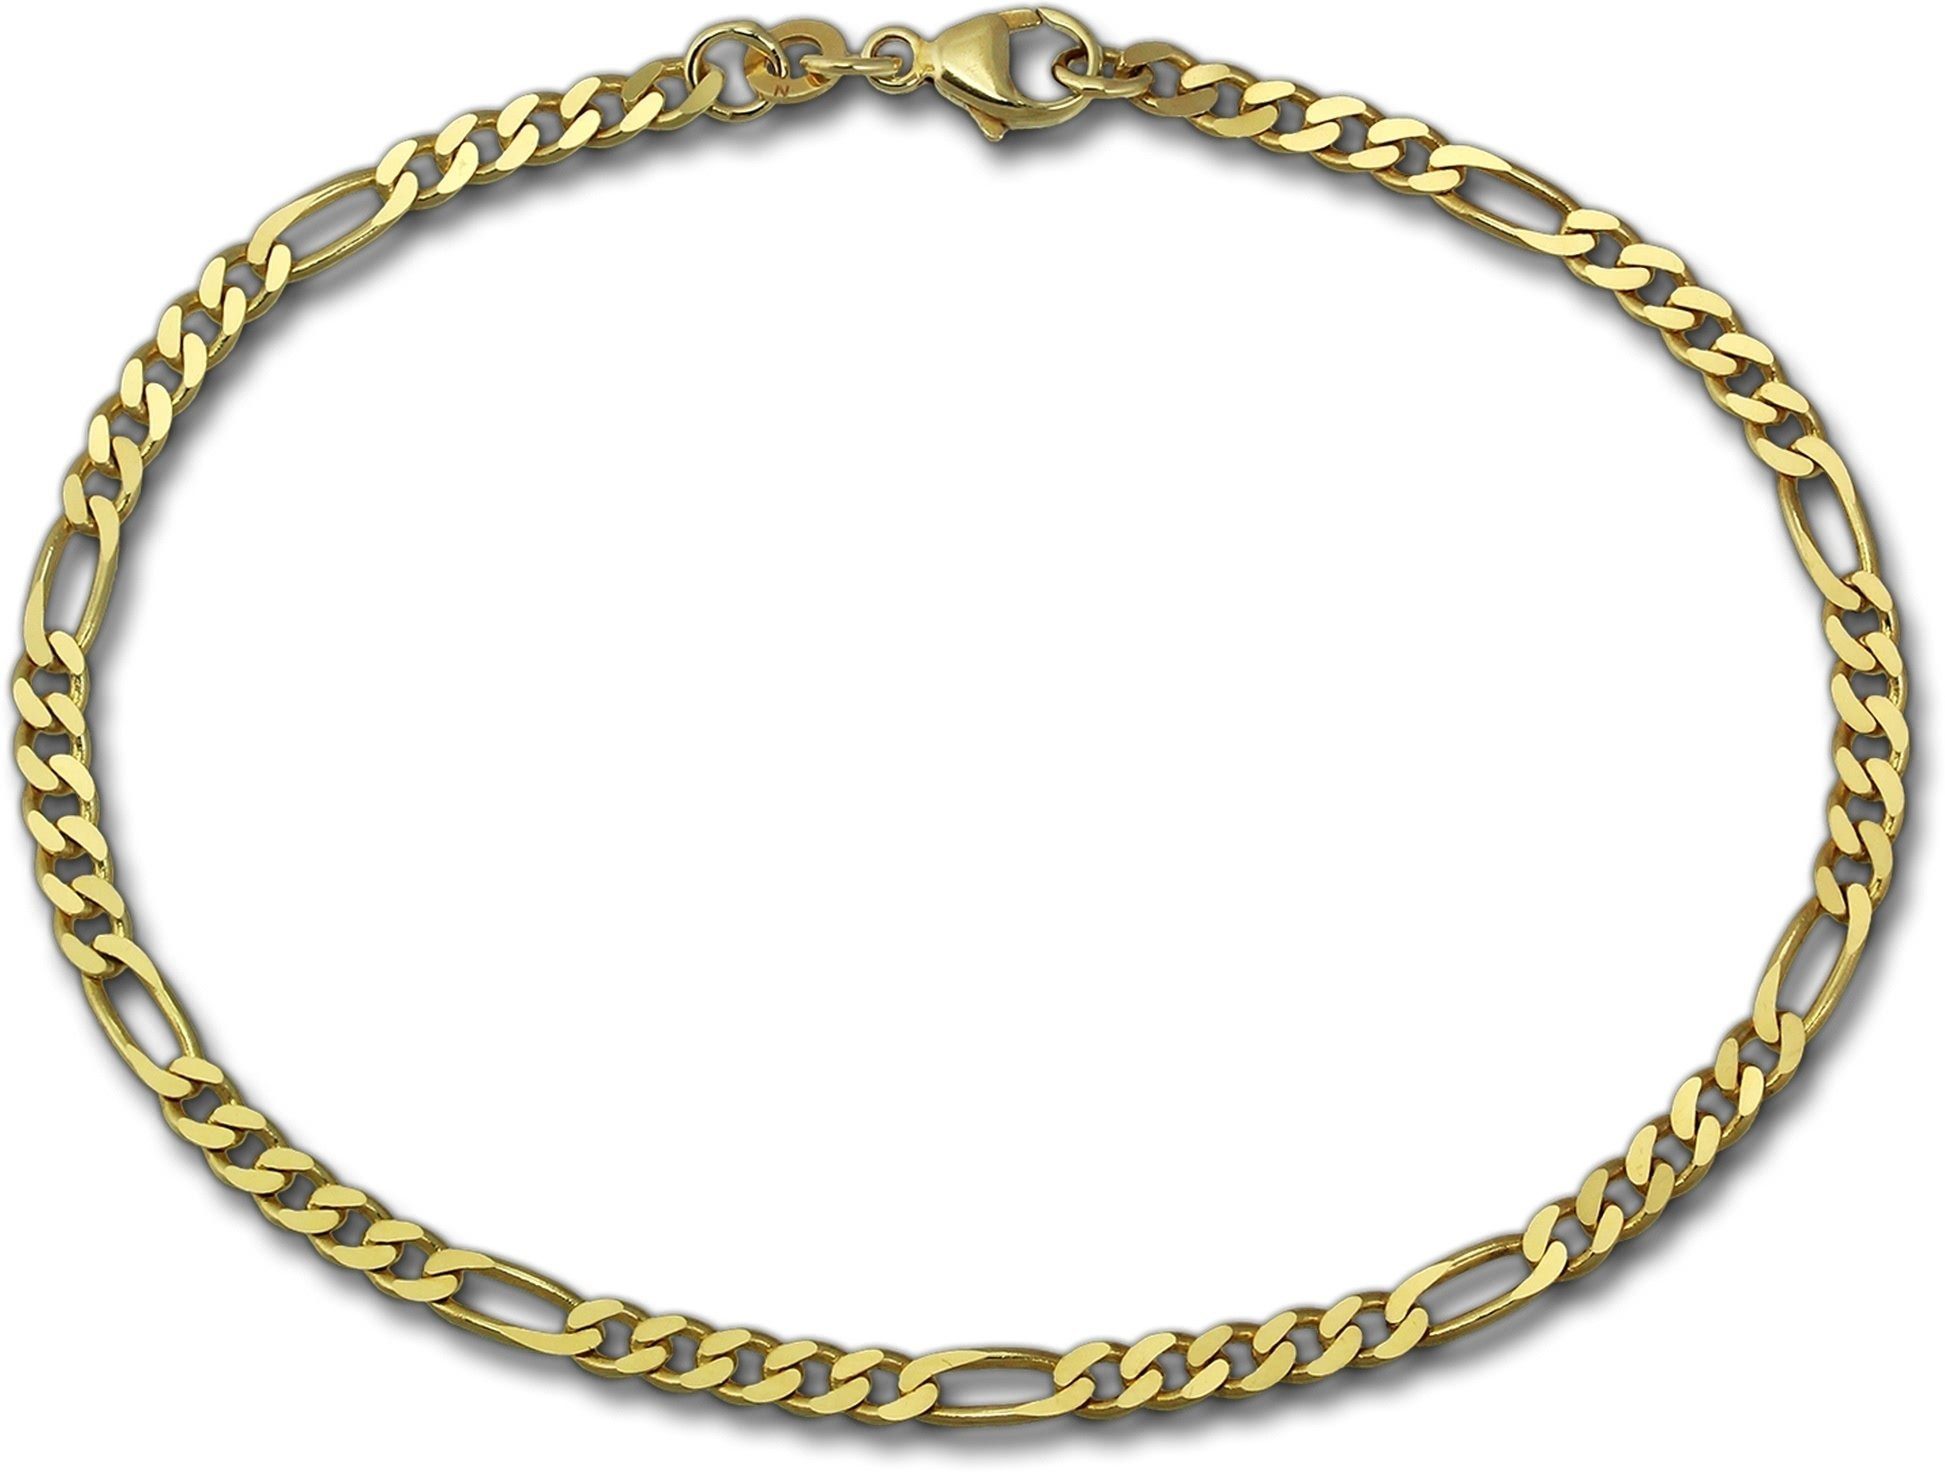 Echtgold 333er 19cm Armband), (Figaro) Armband (Armband, GoldDream 333er Gelbgold Armband GoldDream 19cm, Echtgold, Goldarmband 8 ca. Karat